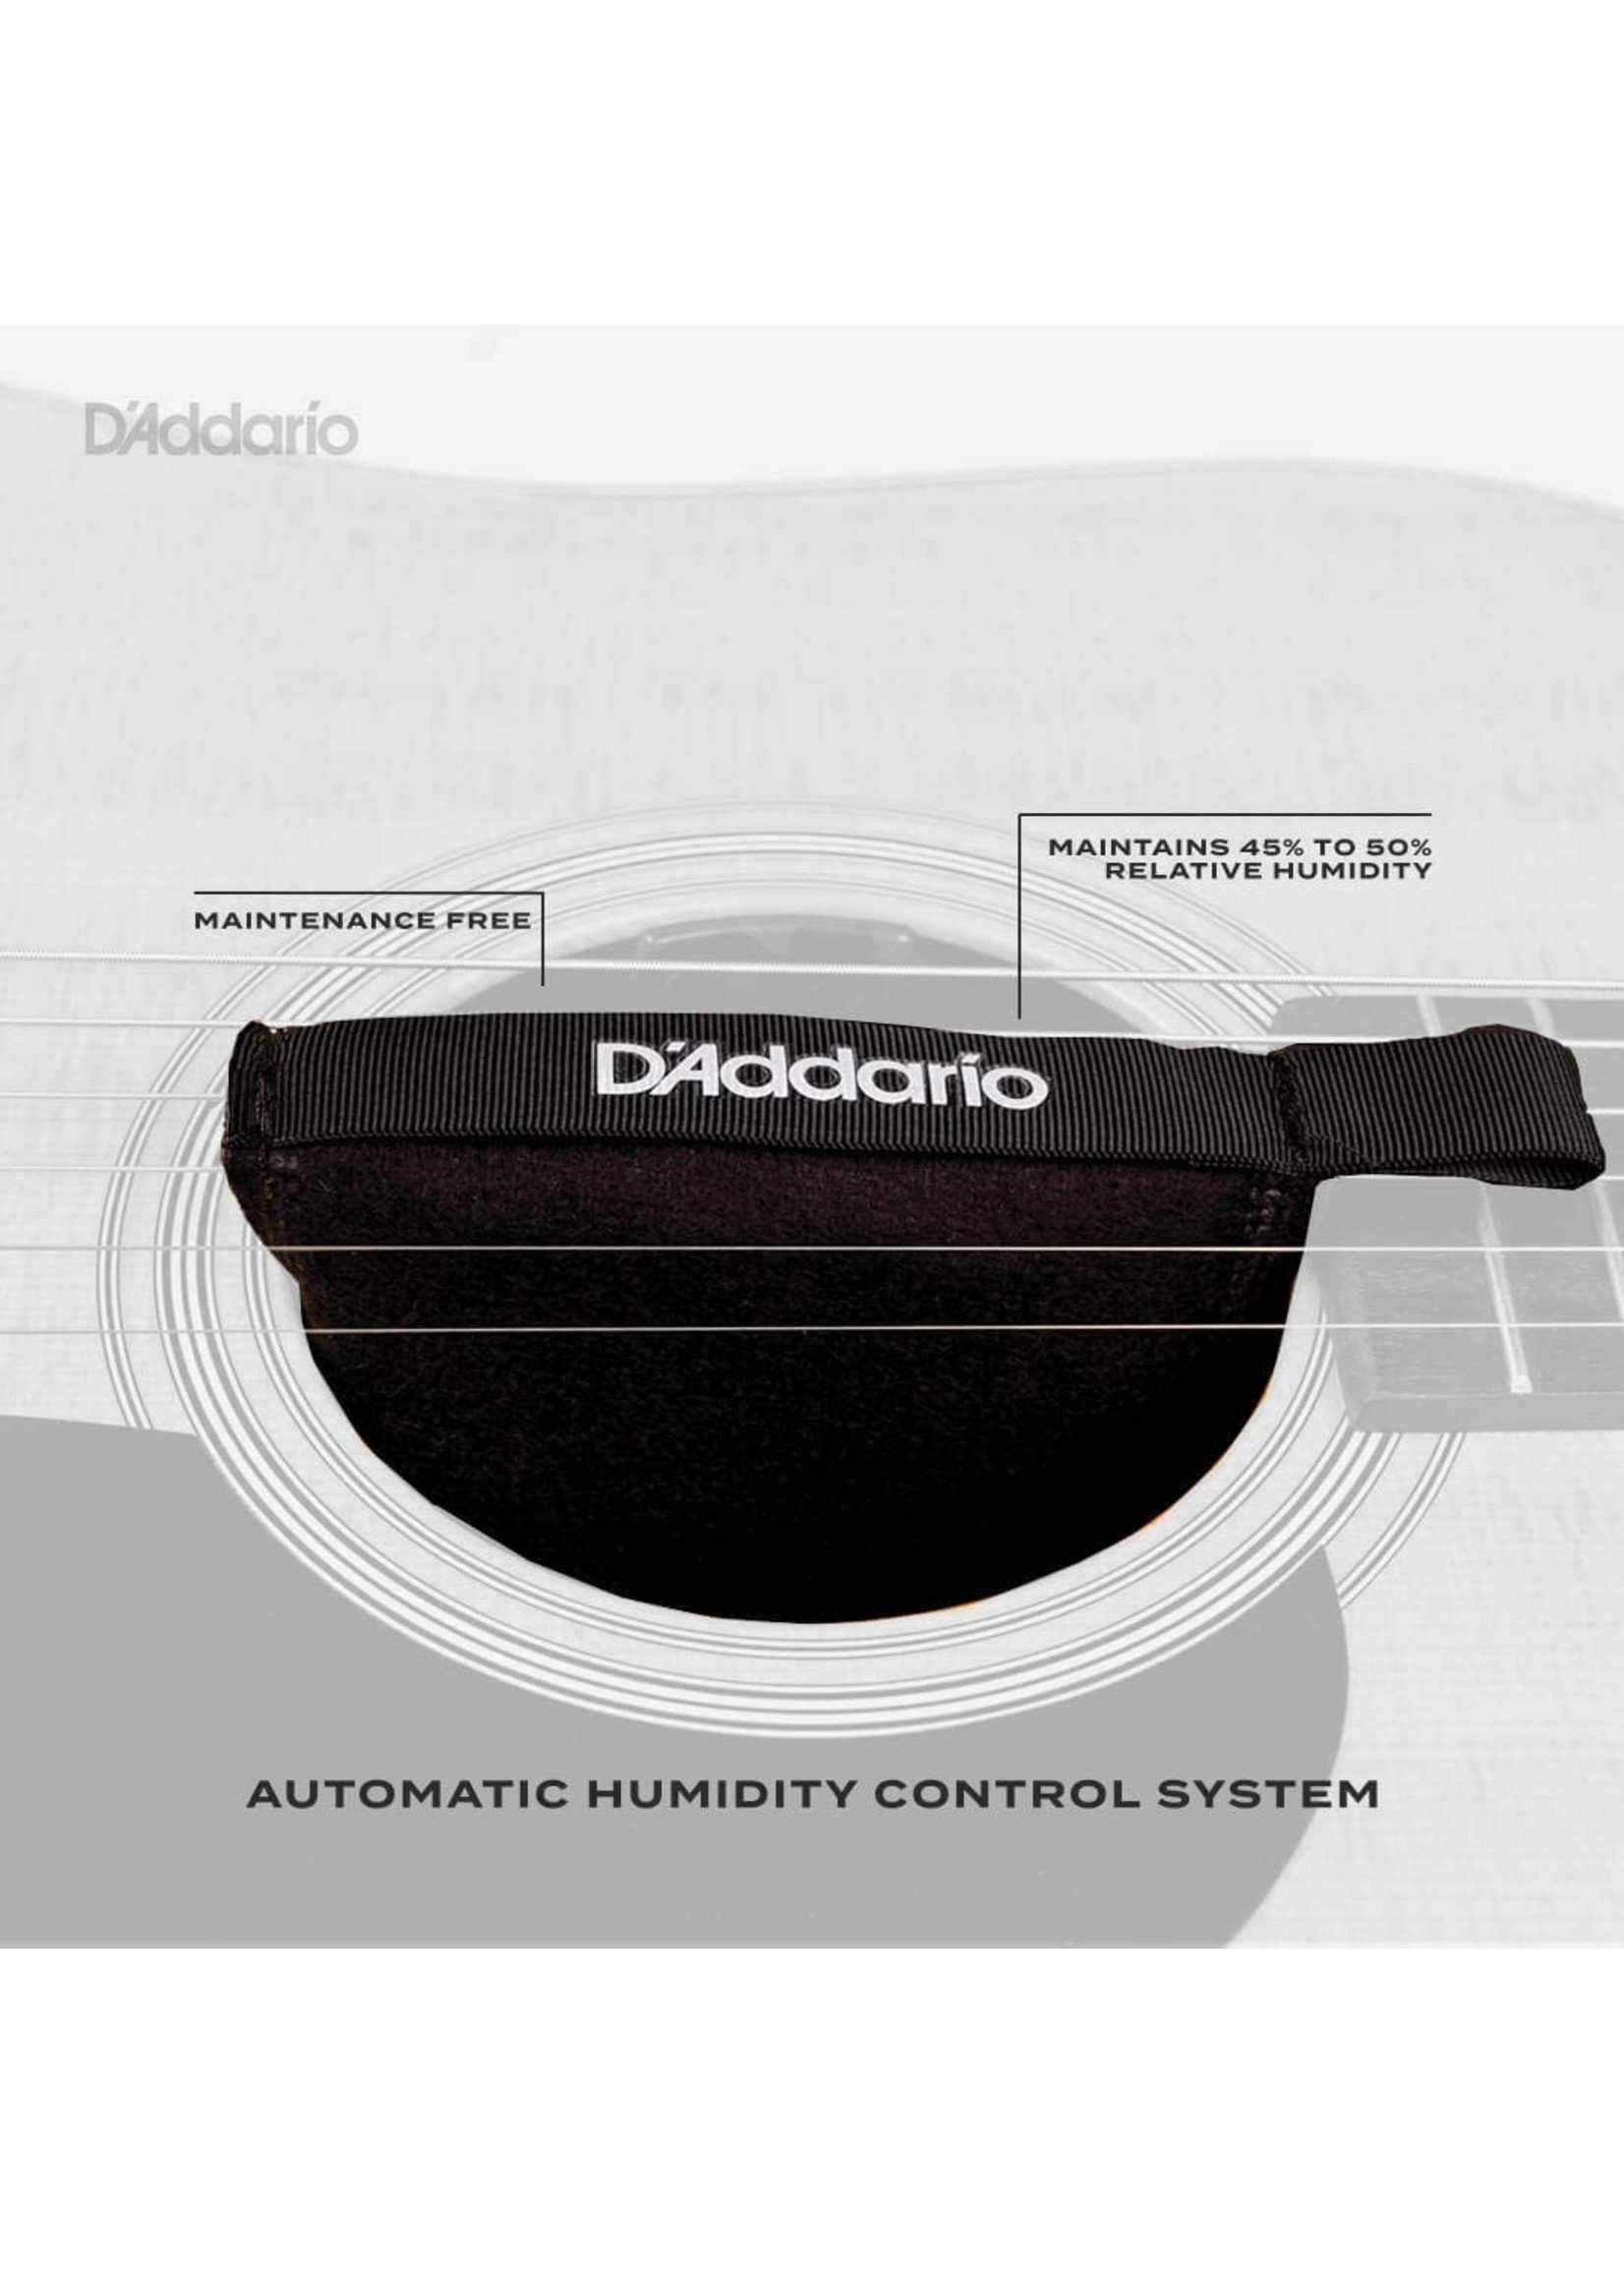 D'Addario Humidipack Two-Way Humidification System